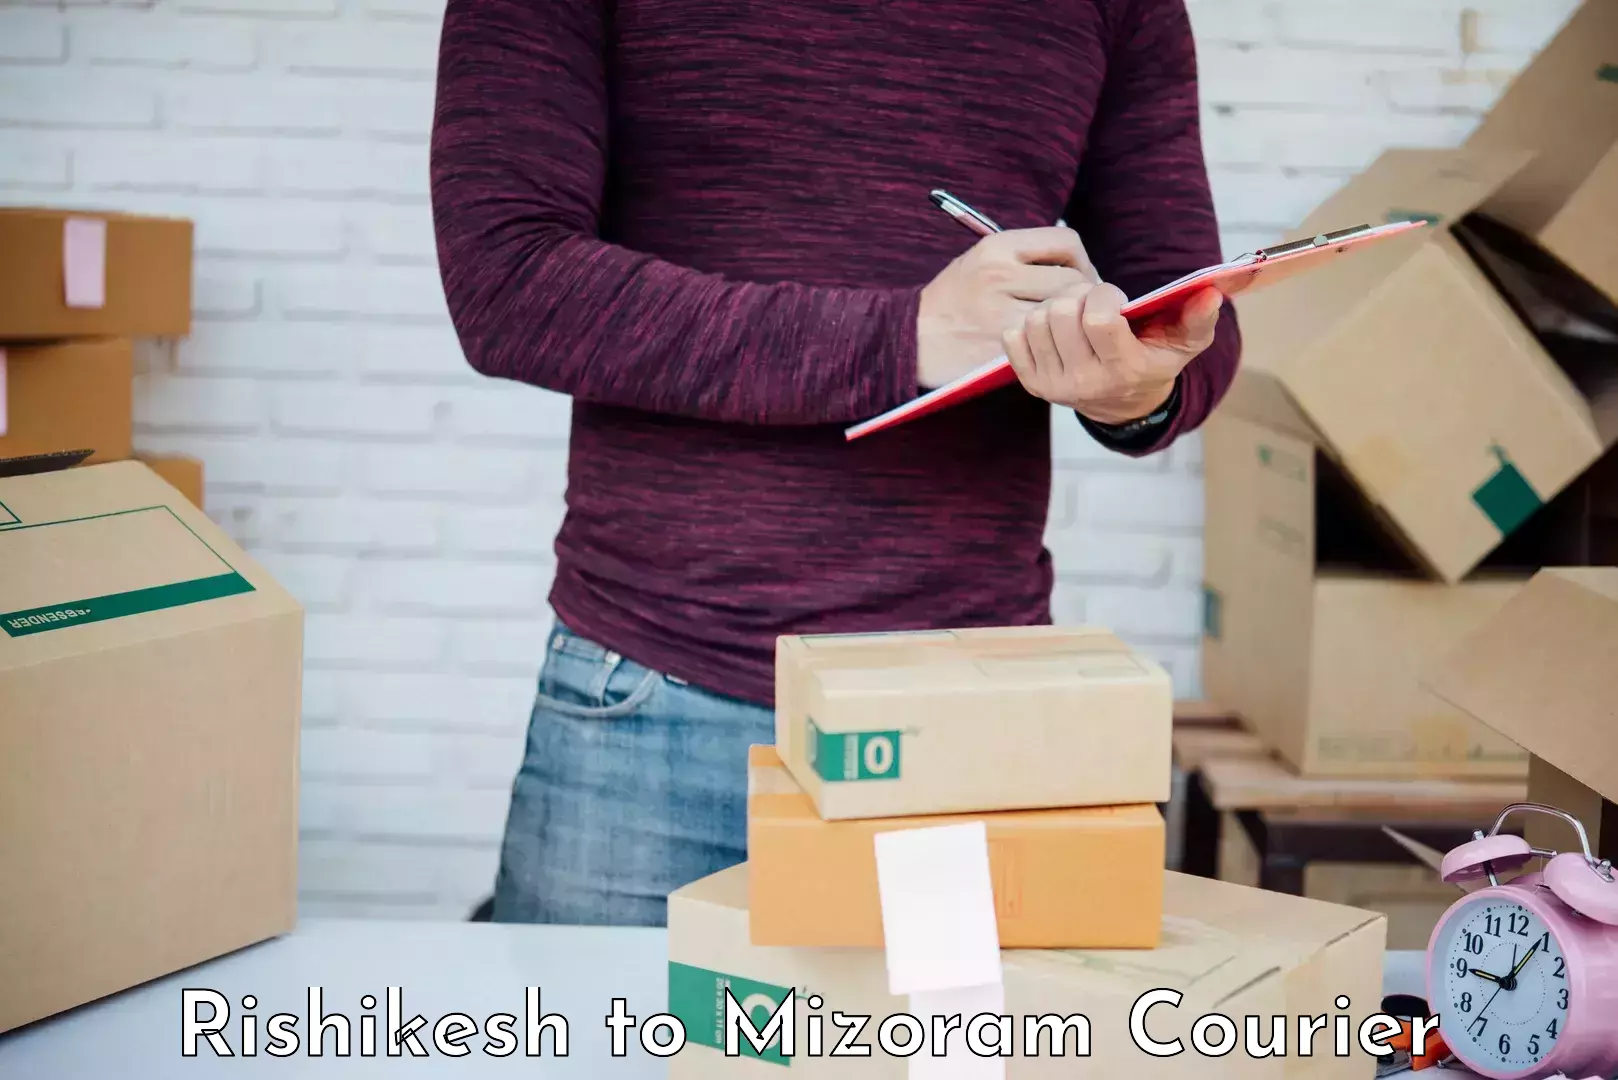 Household moving experts Rishikesh to Mizoram